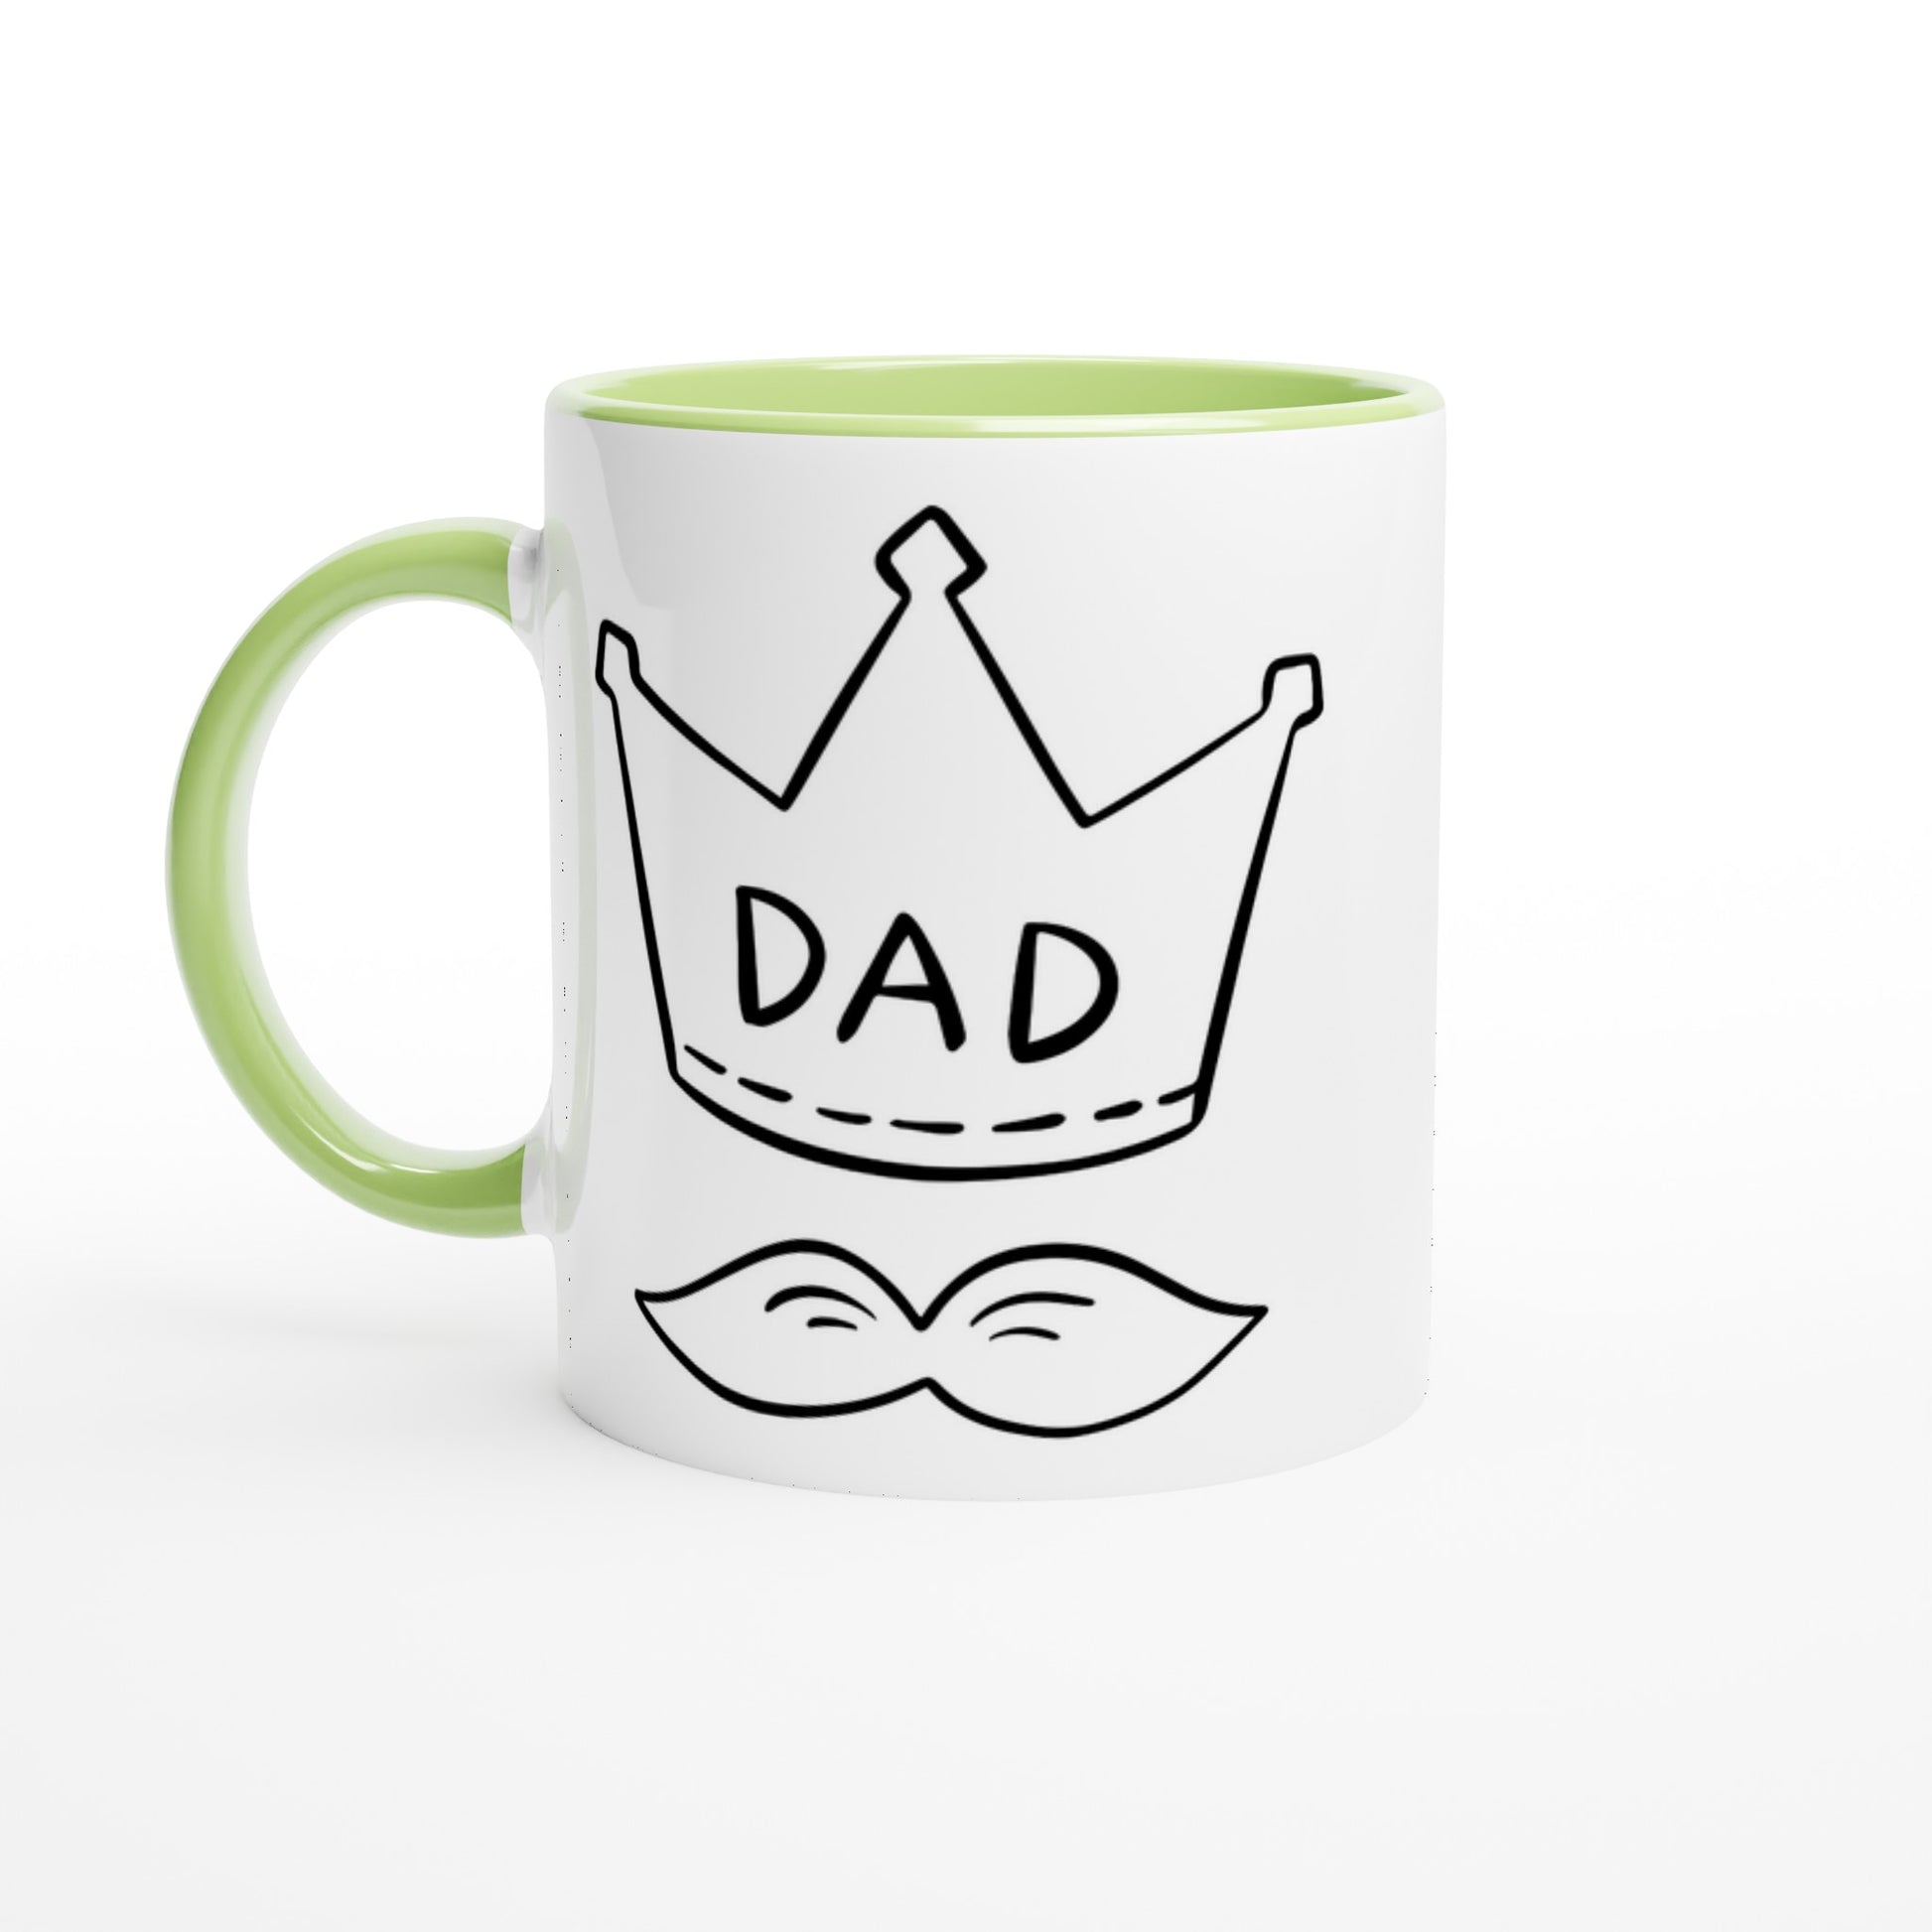 Dad Crown And Moustache - White 11oz Ceramic Mug with Colour Inside Ceramic Green Colour 11oz Mug Dad